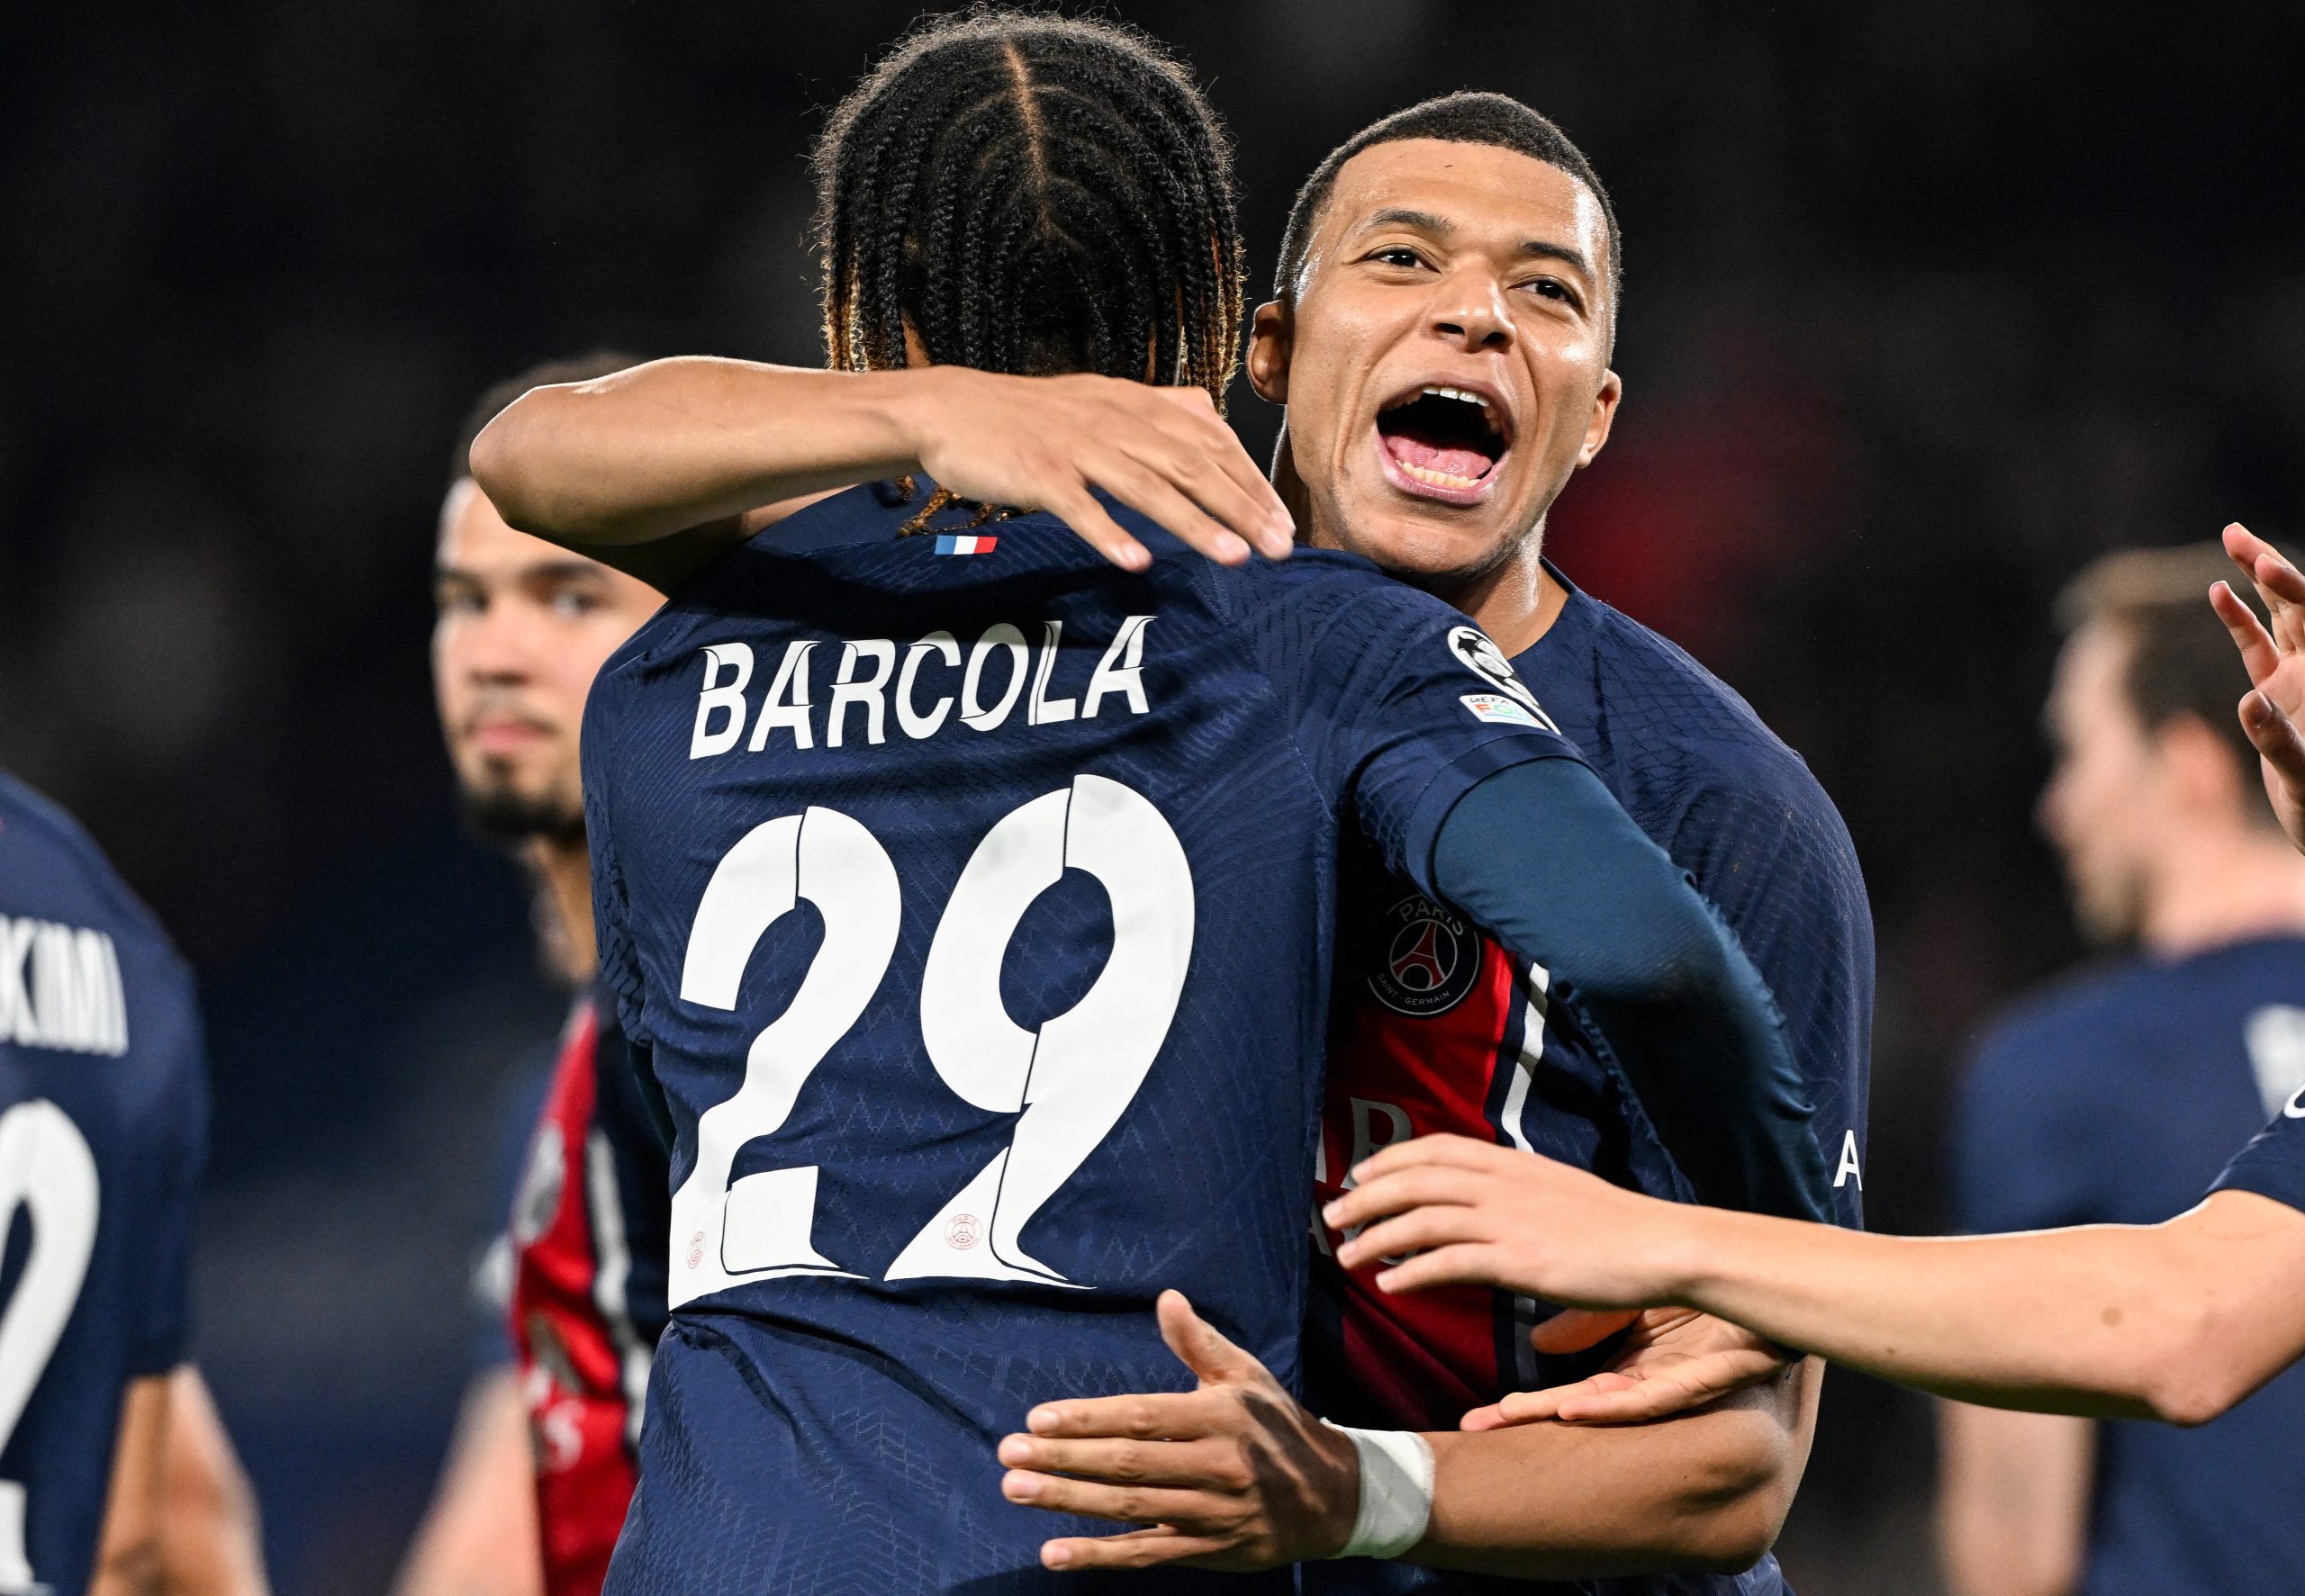 Com gols de Mbappé e Barcola, o PSG venceu a Real Sociedad no jogo de ida das oitavas de final da Champions League - (Foto: MIGUEL MEDINA/AFP via Getty Images)